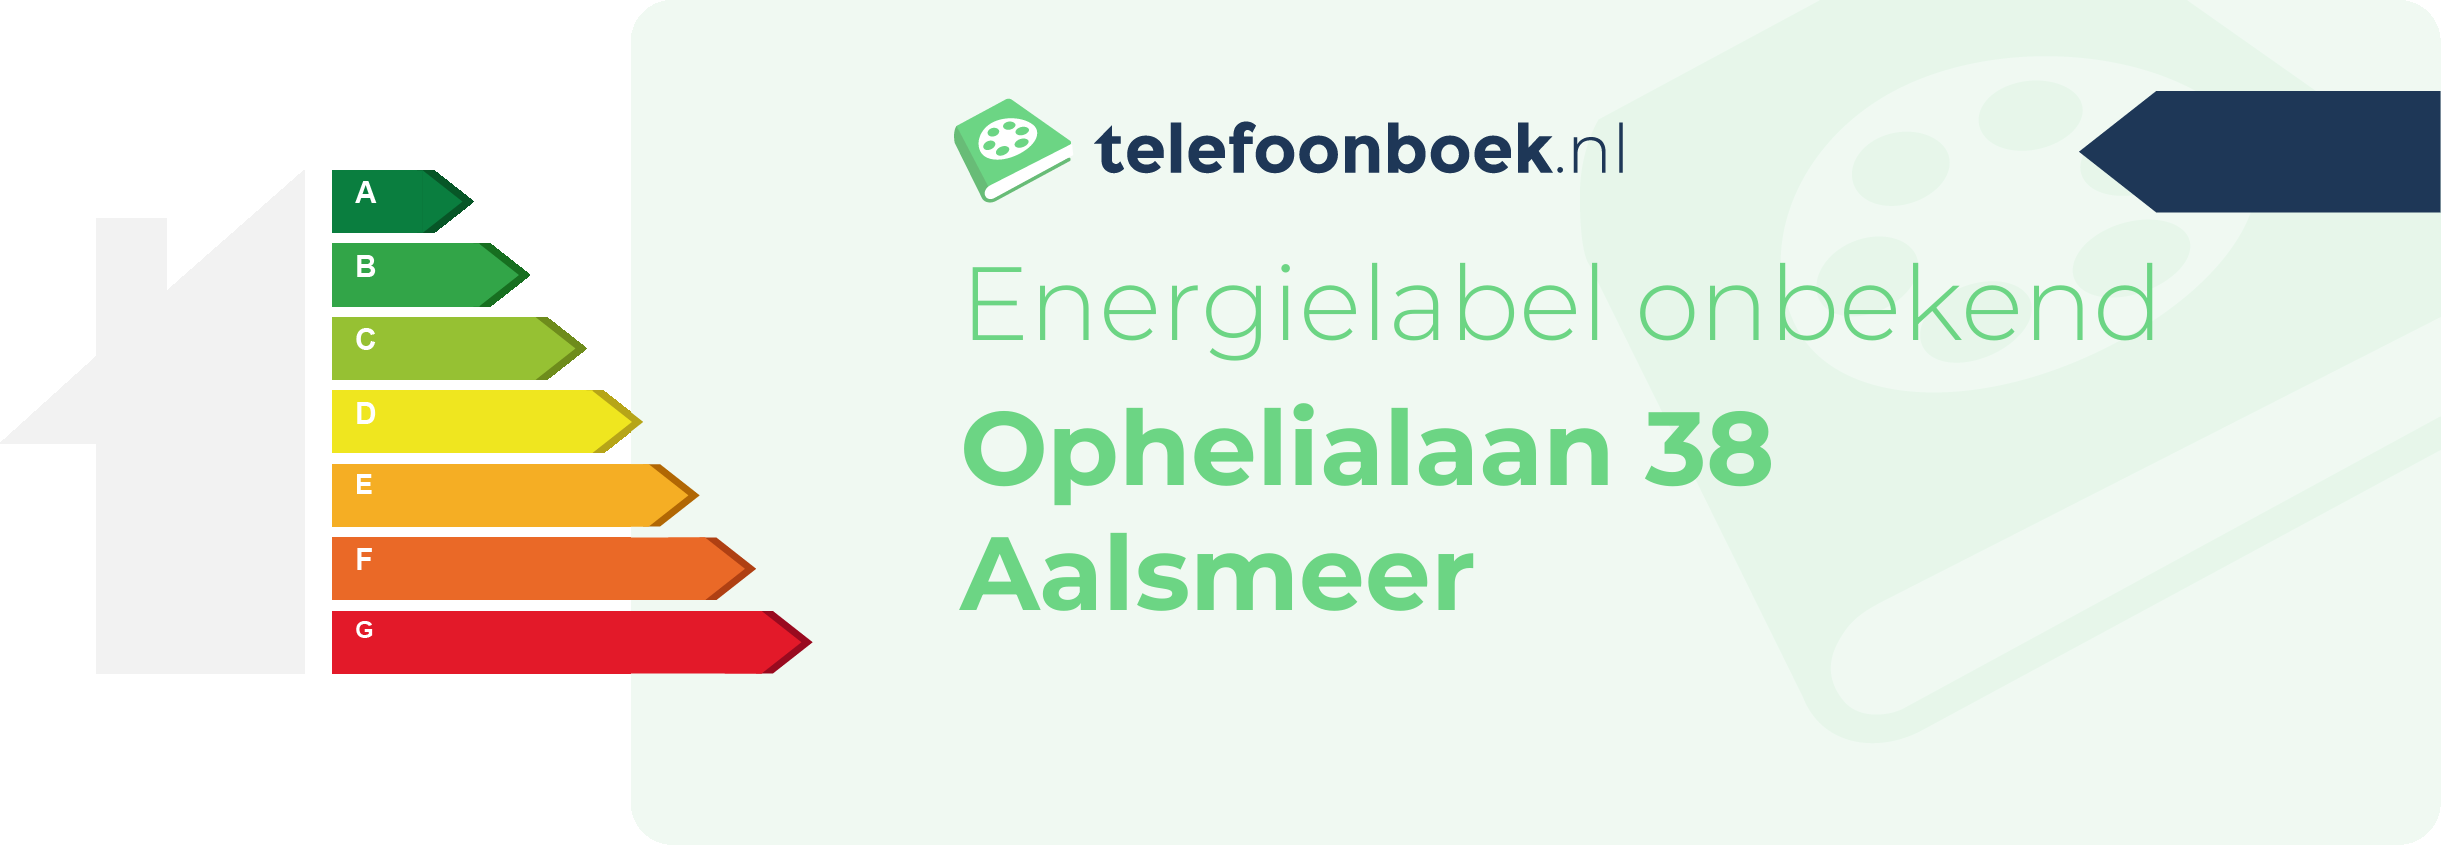 Energielabel Ophelialaan 38 Aalsmeer